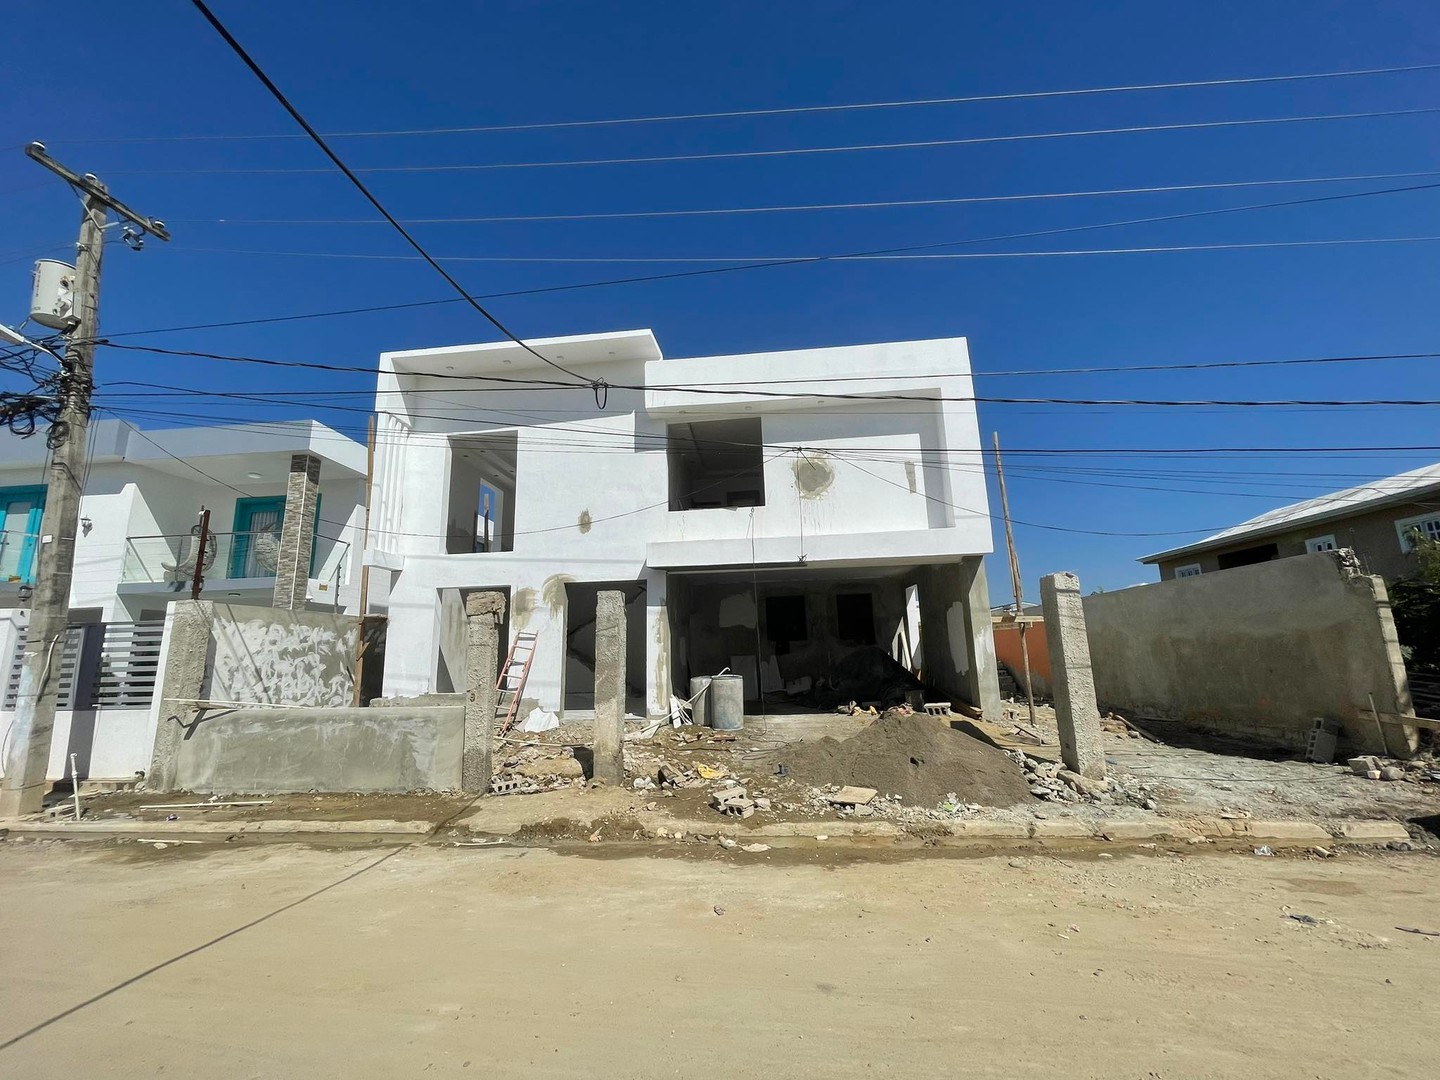 casas - Casa En Construcción, Amplios Espacios, 390 Mts de Solar  Próximo  Al Homs  0